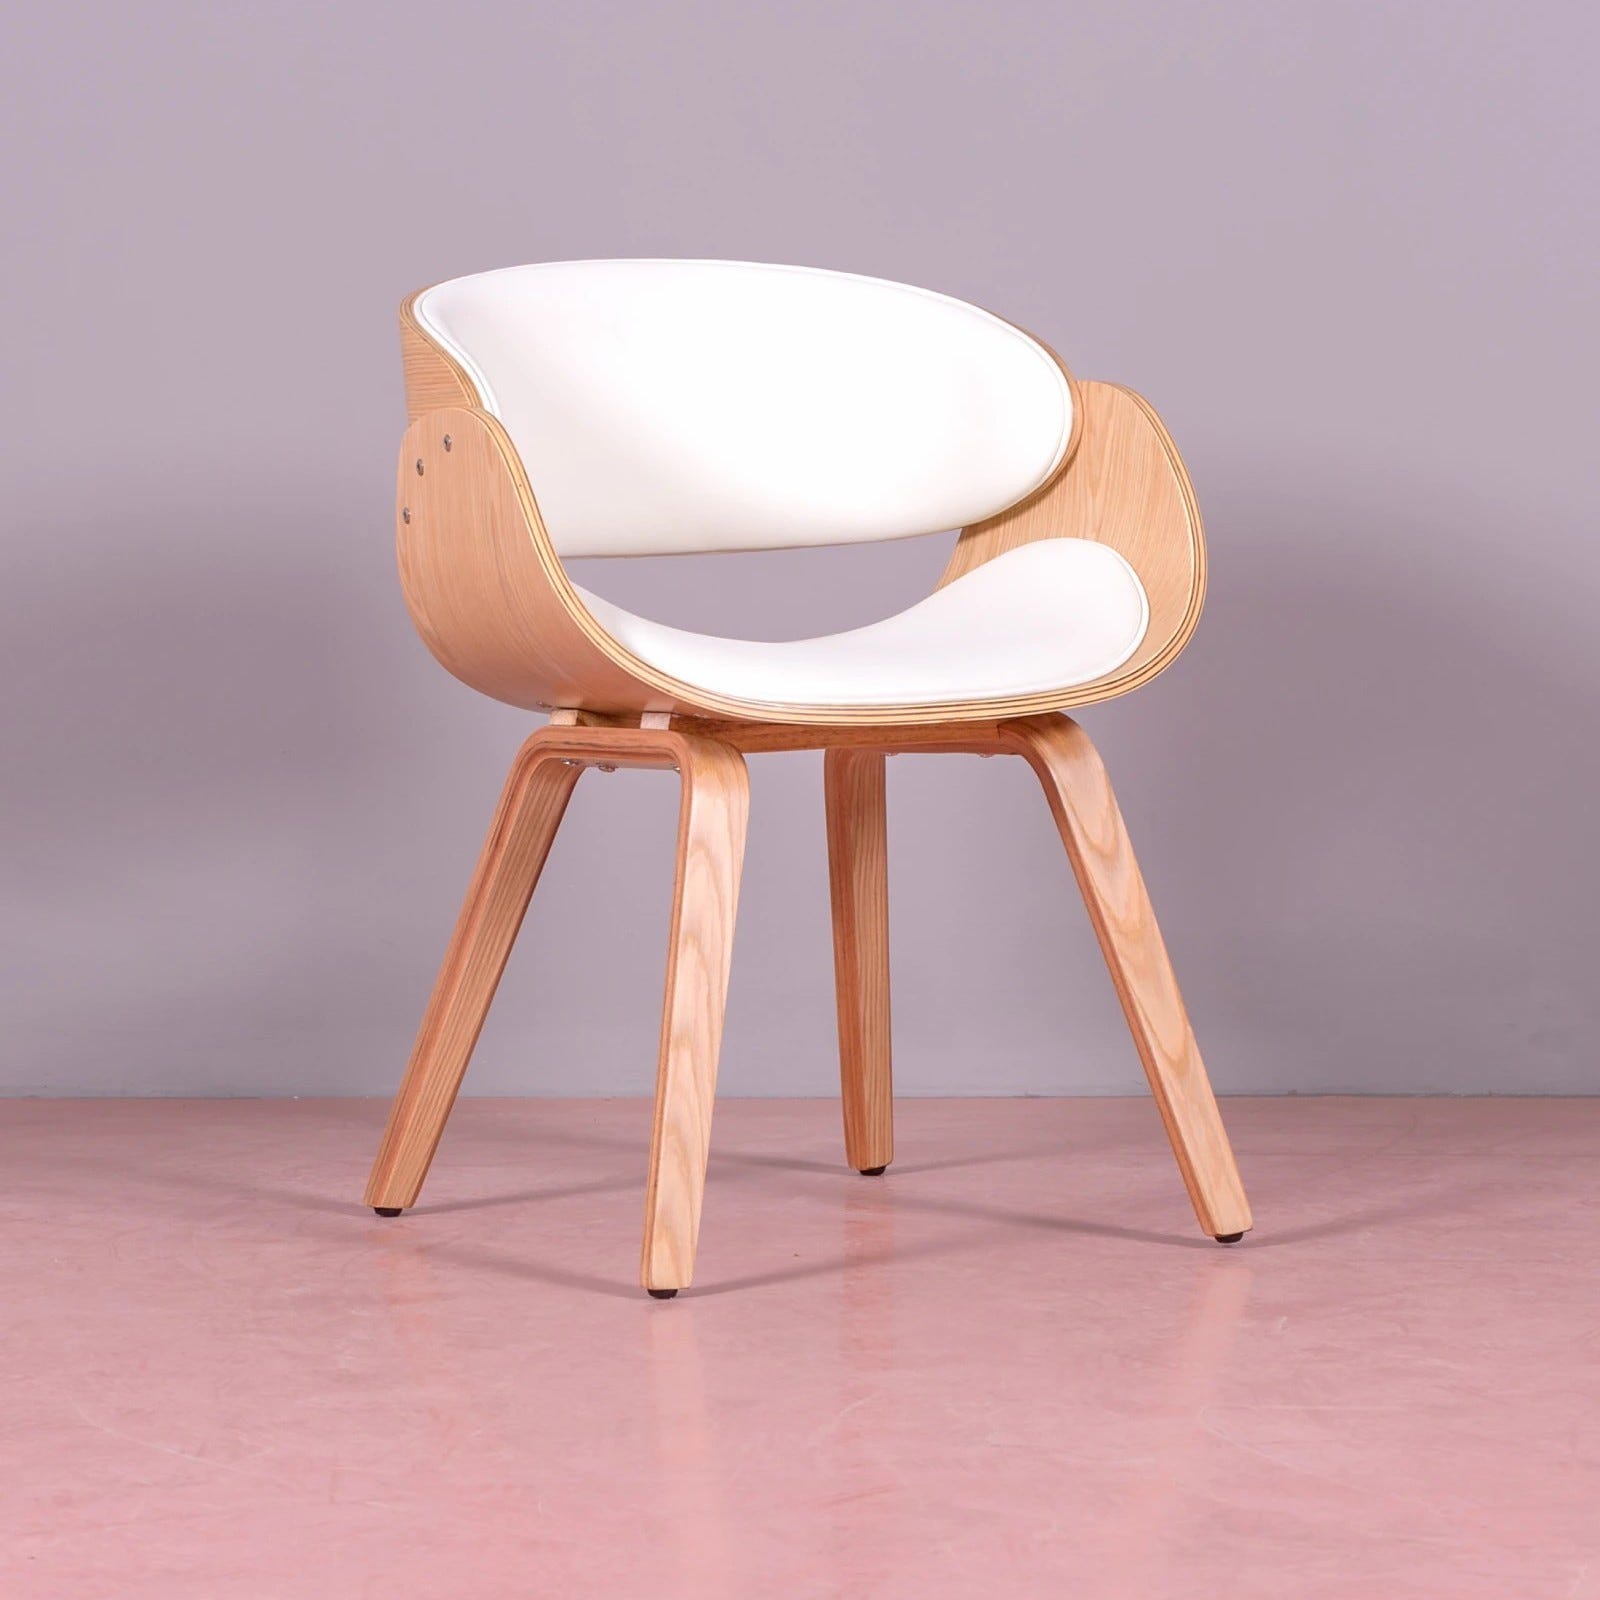 Chaise scandinave en bois clair d'érable avec coussin en similicuir -  Burrow S